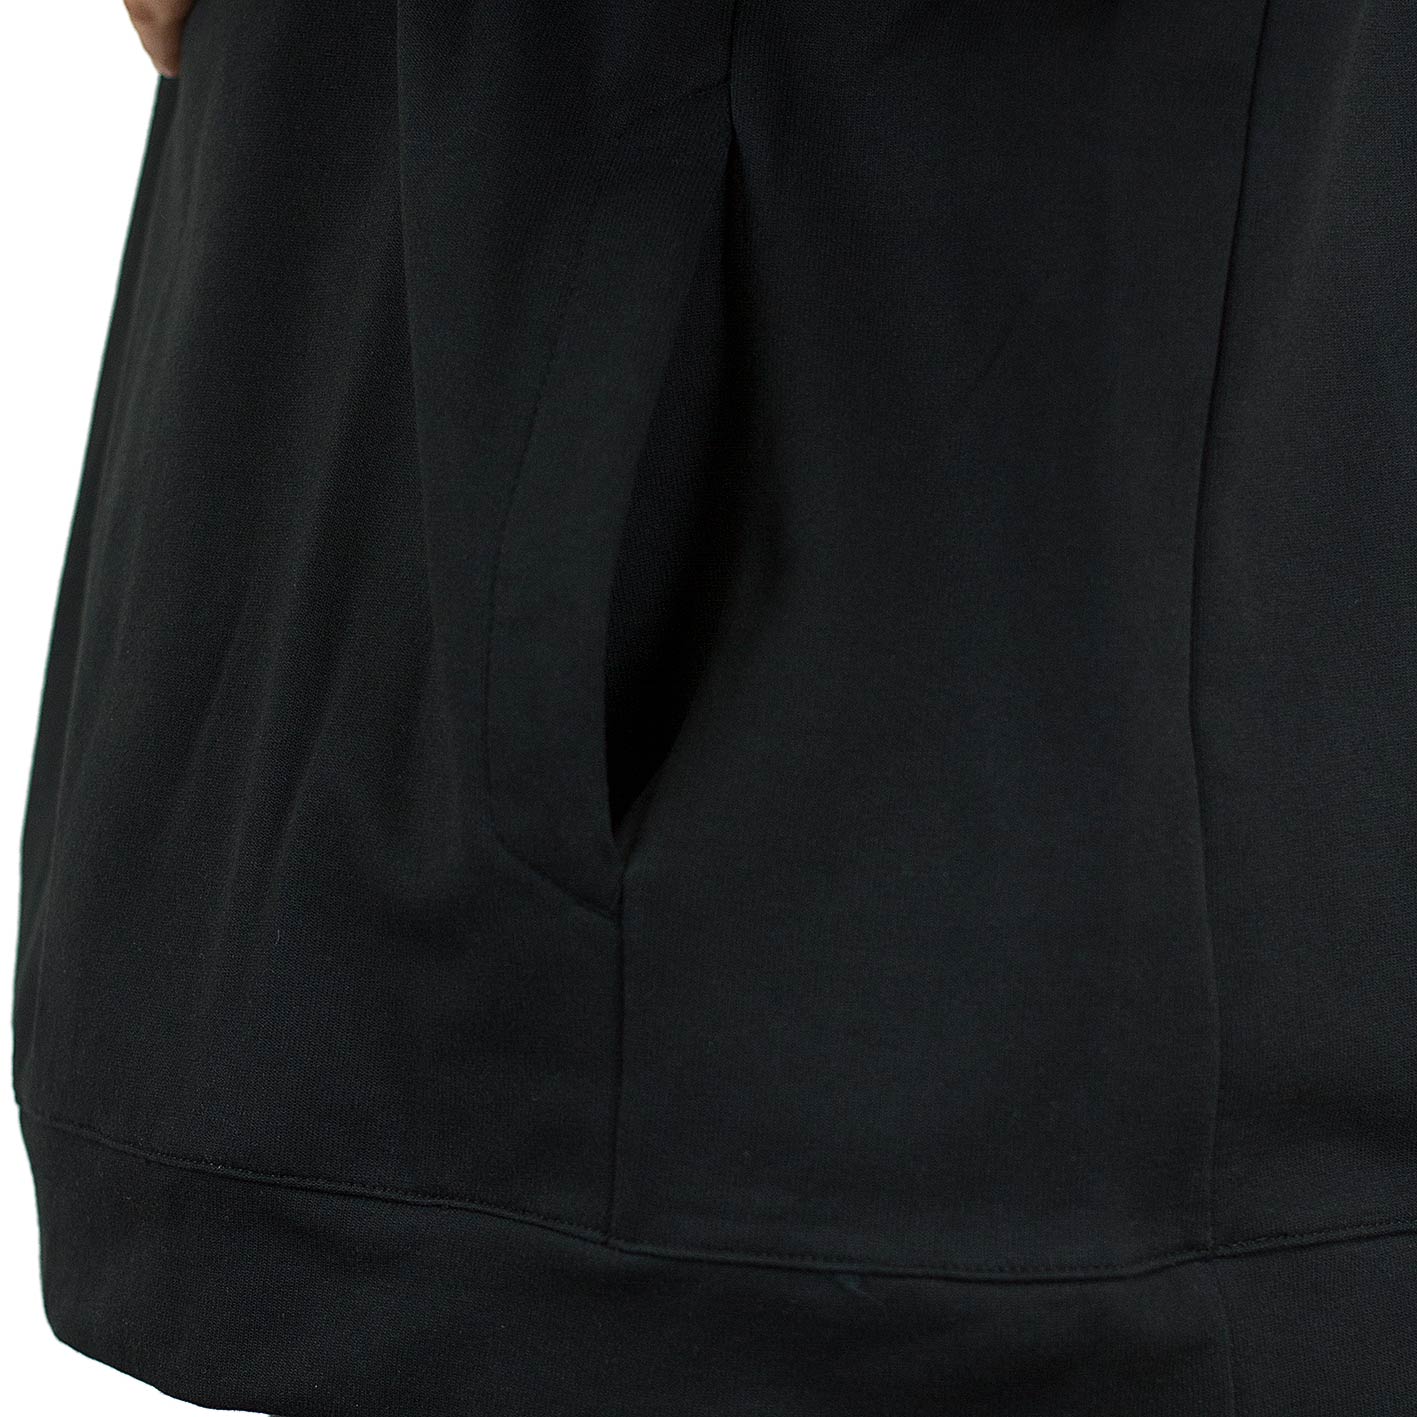 ☆ Nike Sweatshirt Advance 15 schwarz/weiß - hier bestellen!